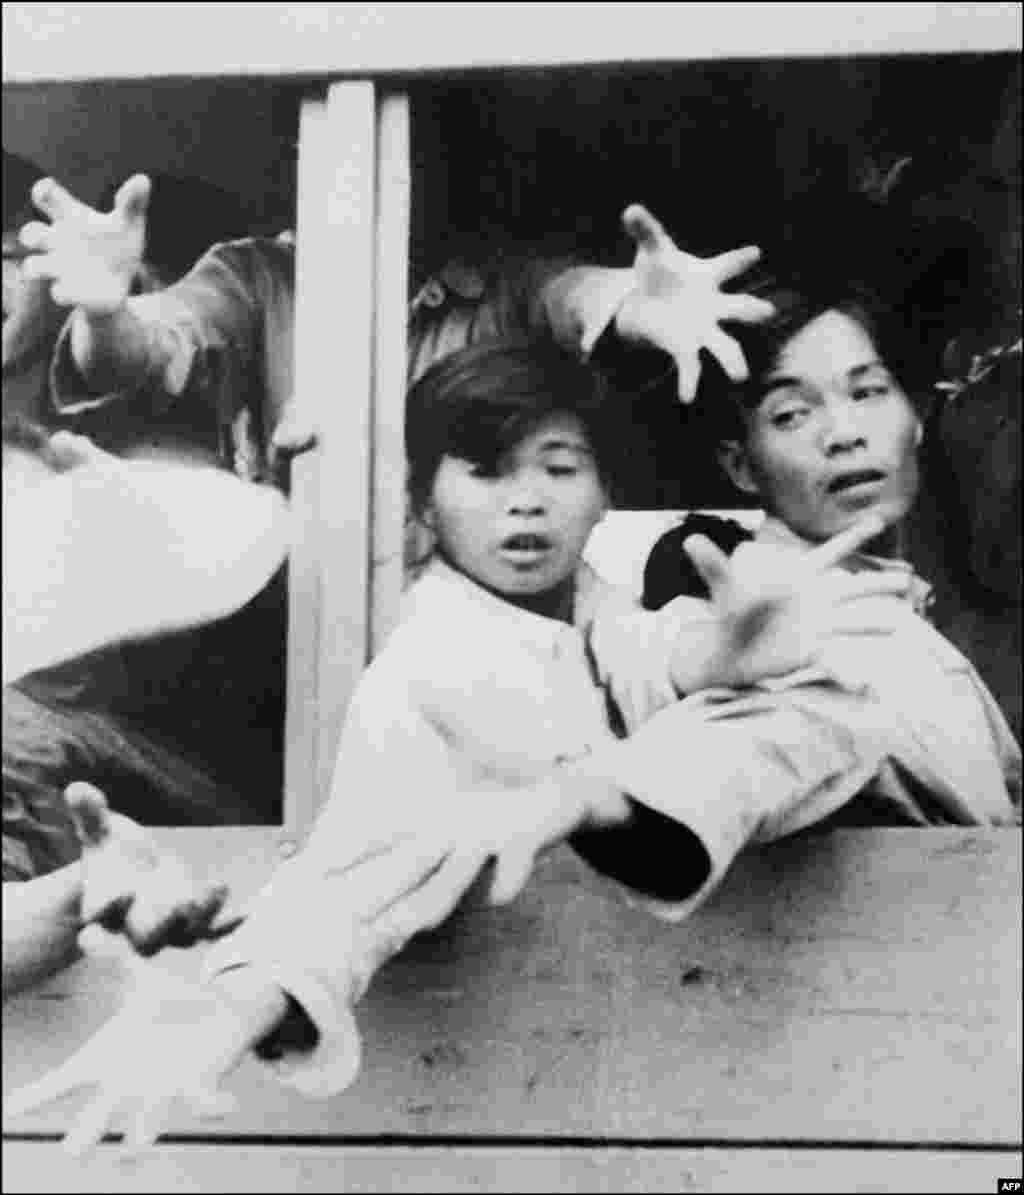 ۶۰ هزار پناهجوی چینی در سال ۱۹۶۲ به هنگ کنگ که تحت کنترل بریتانیا بود گریختند